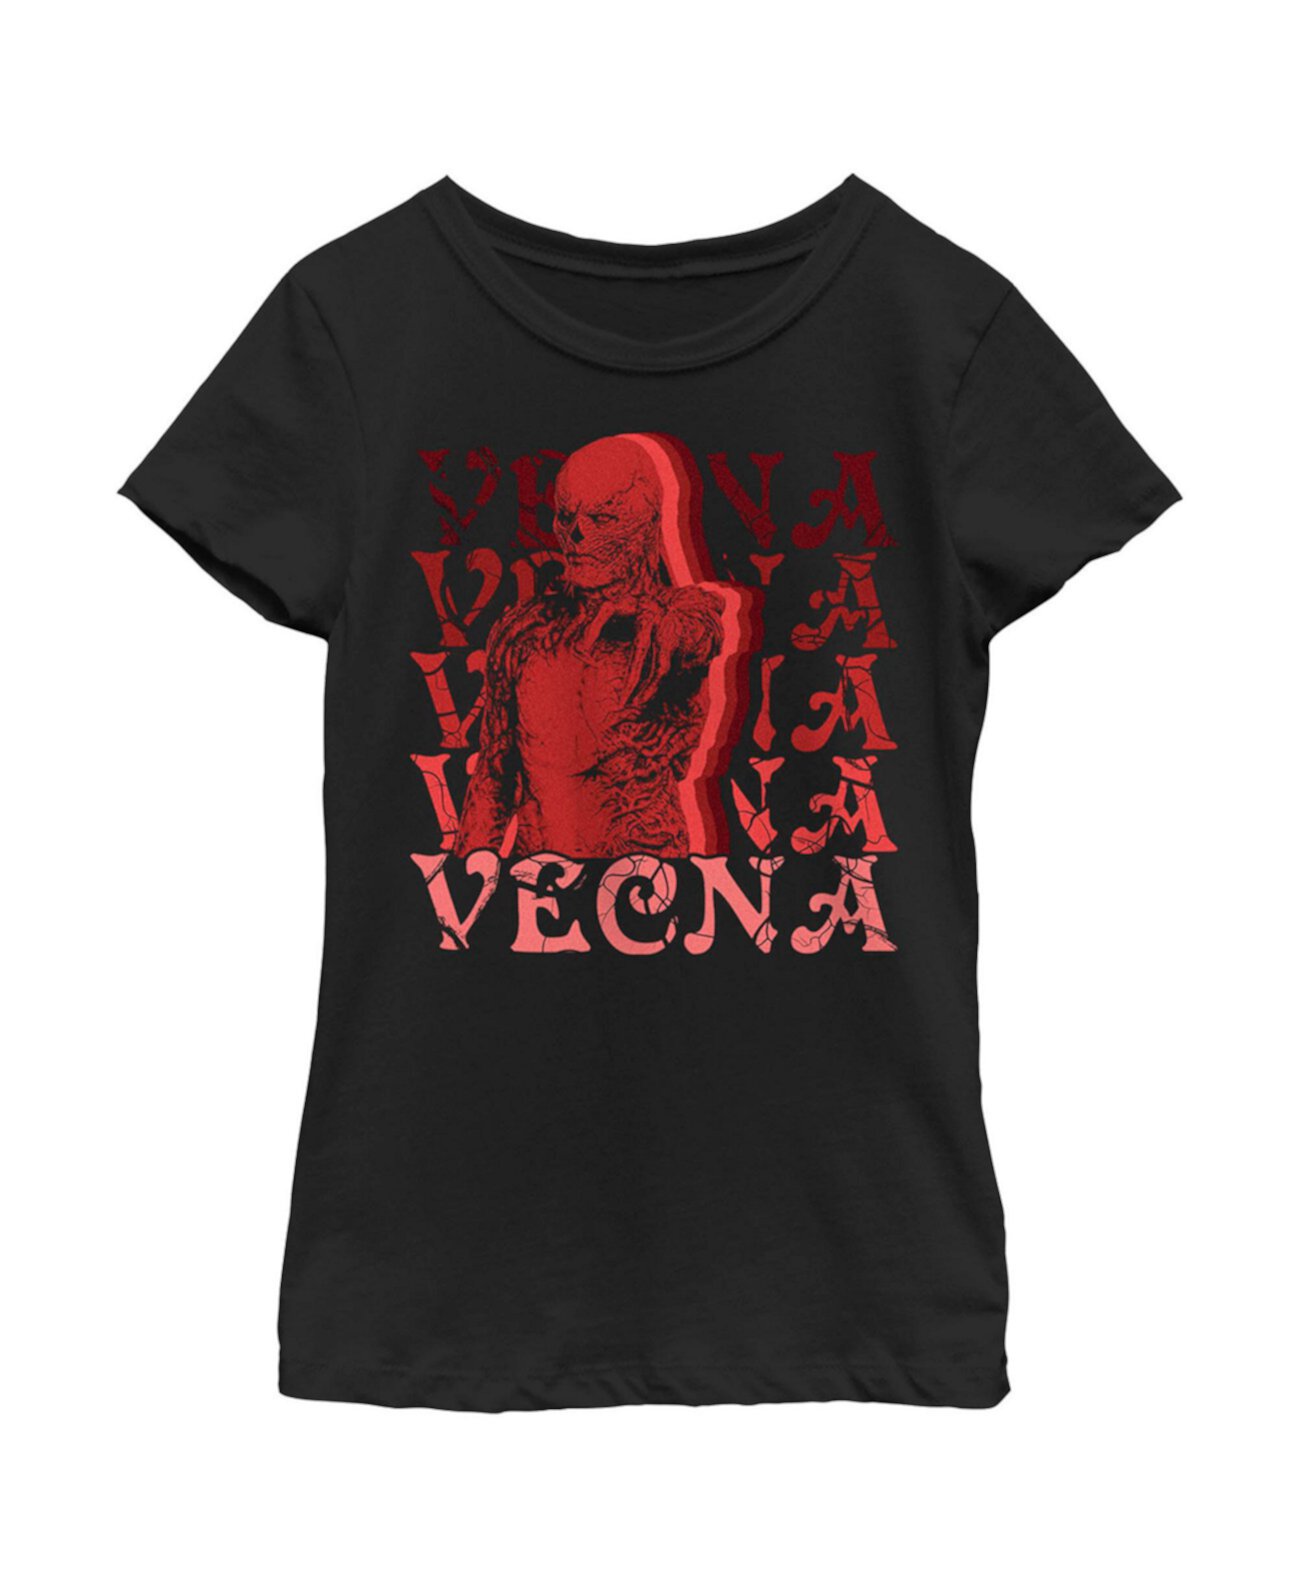 Girl's Stranger Things Red Vecna Stacked  Child T-Shirt Netflix